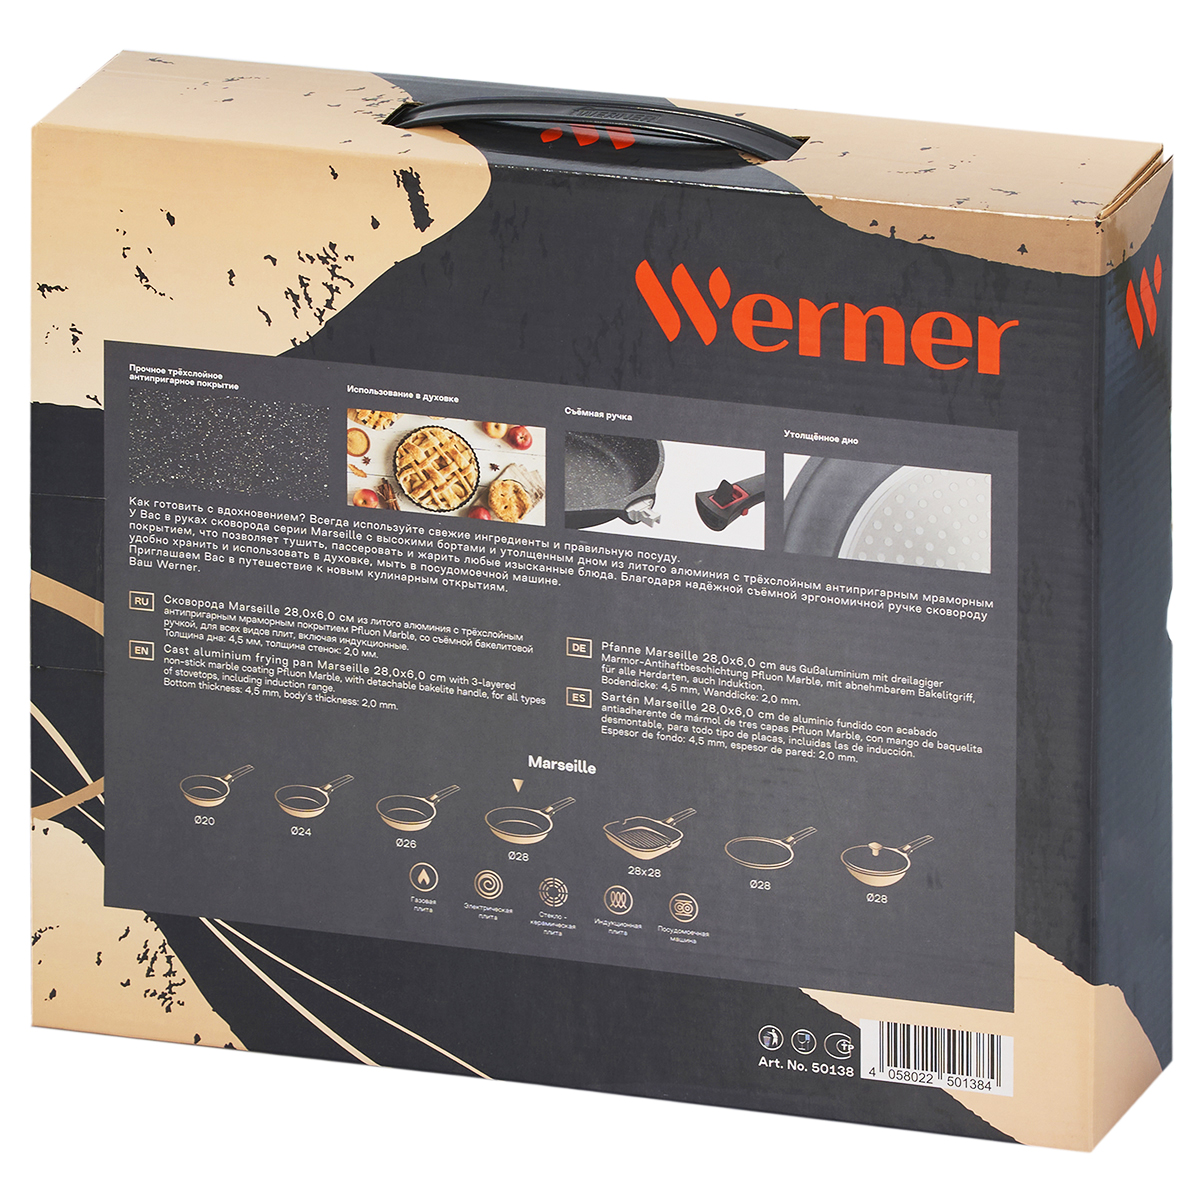 Сковорода Werner Marseille 28 см, цвет черный - фото 7